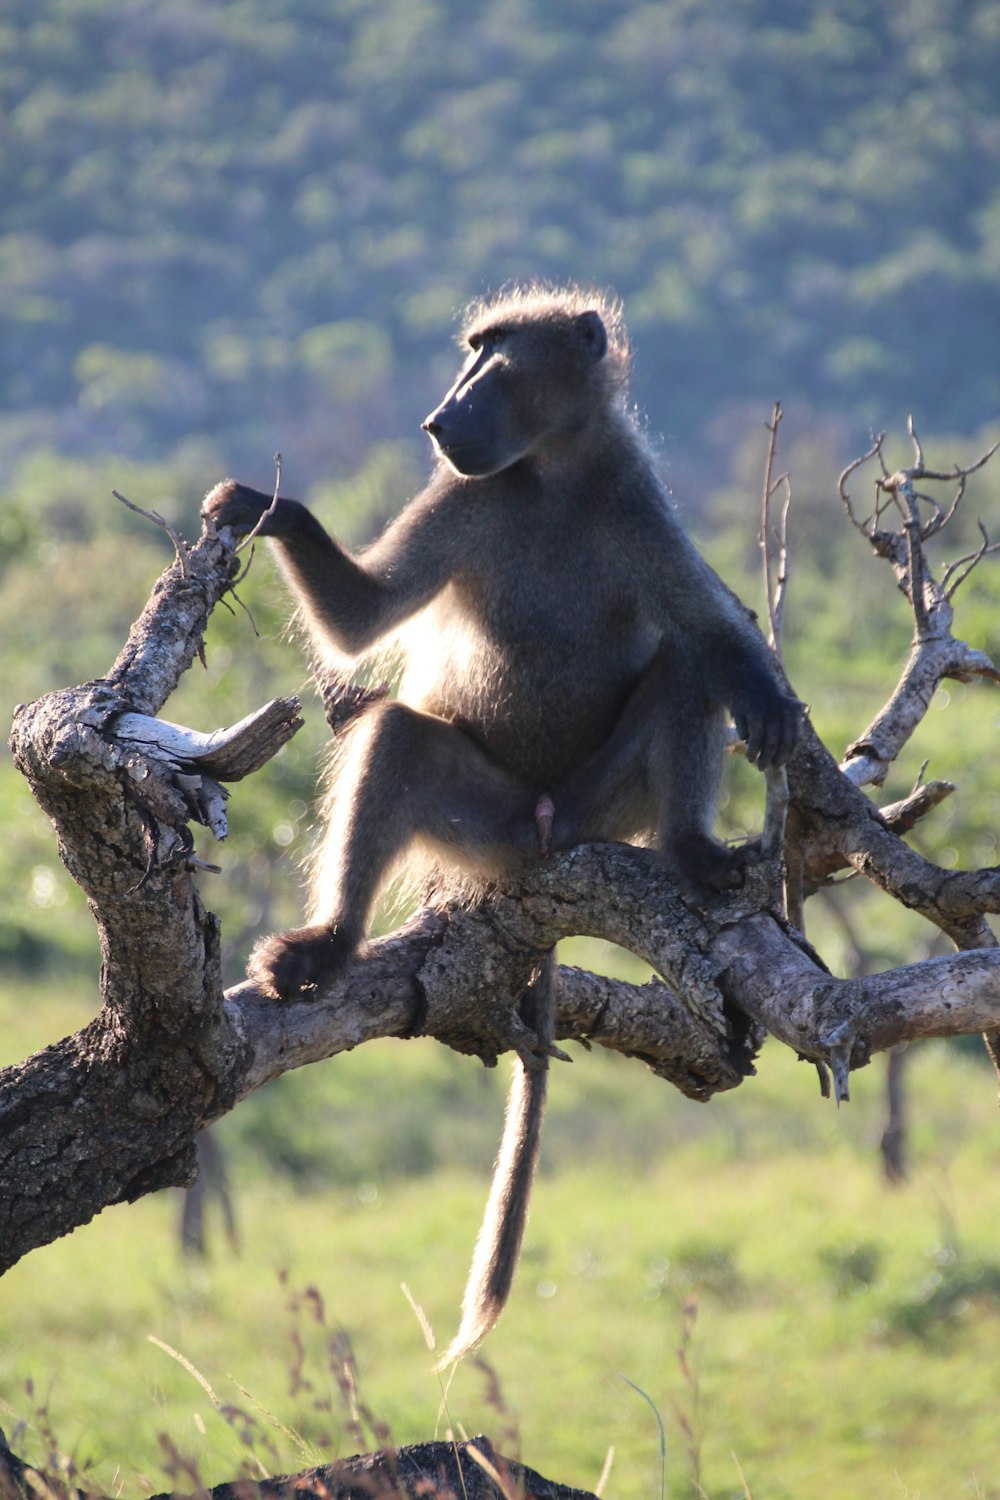 a monkey sitting on a tree branch in a field